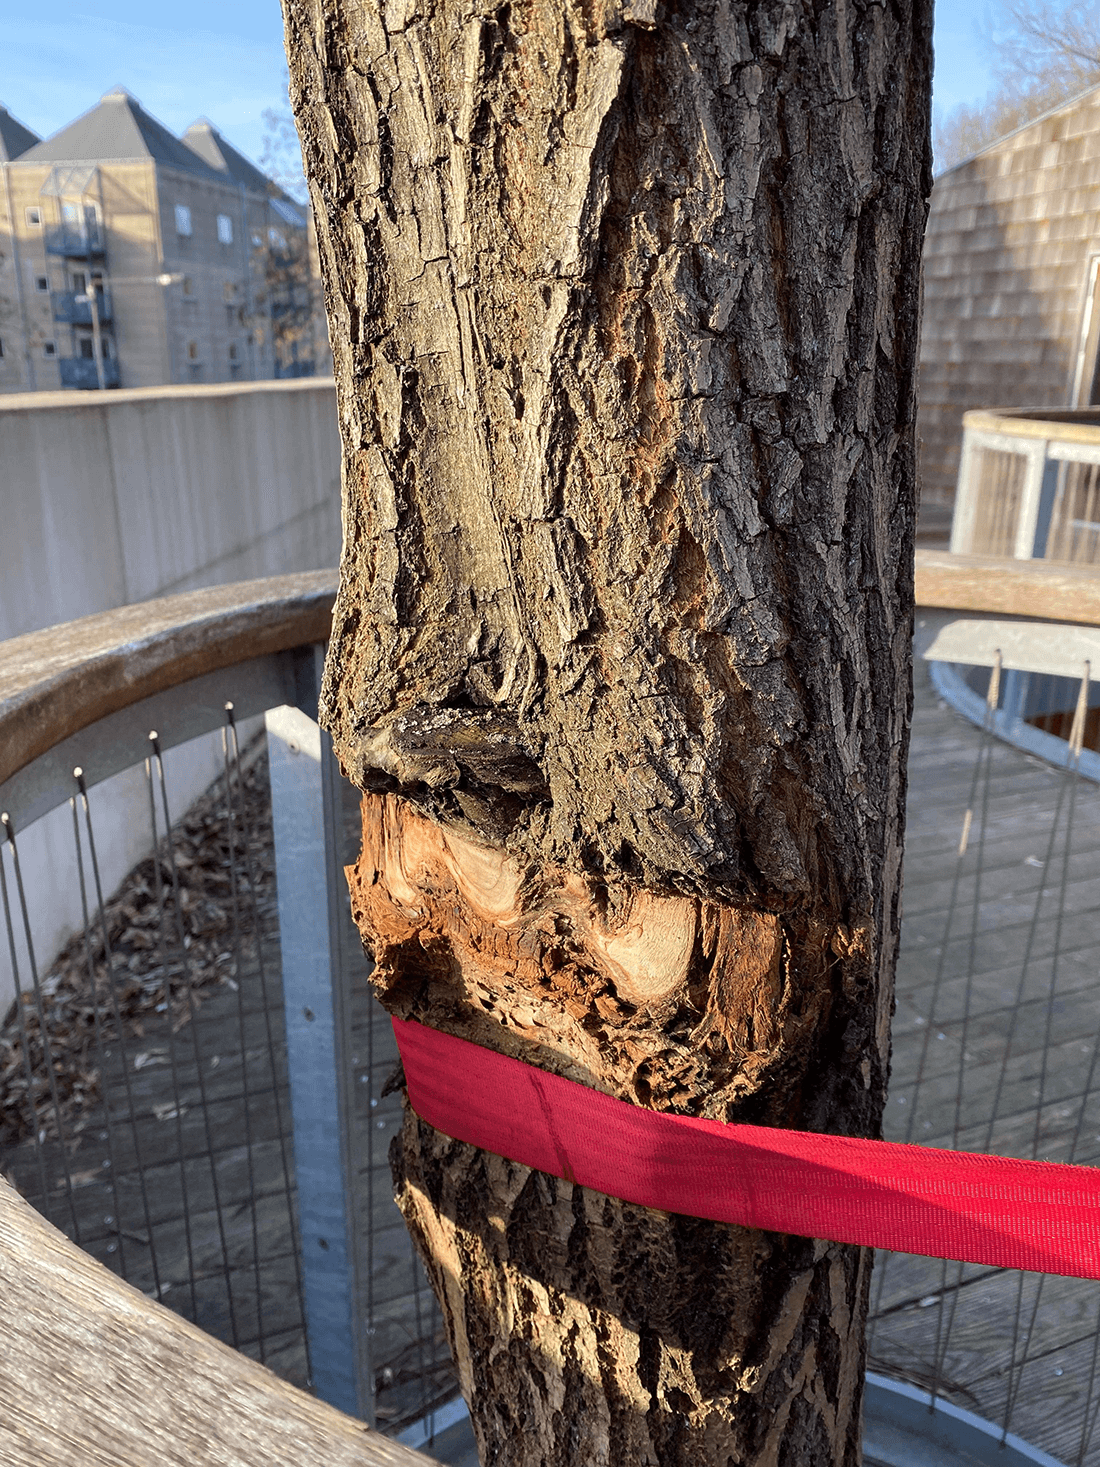 Bredt gnavesår i barken på træ